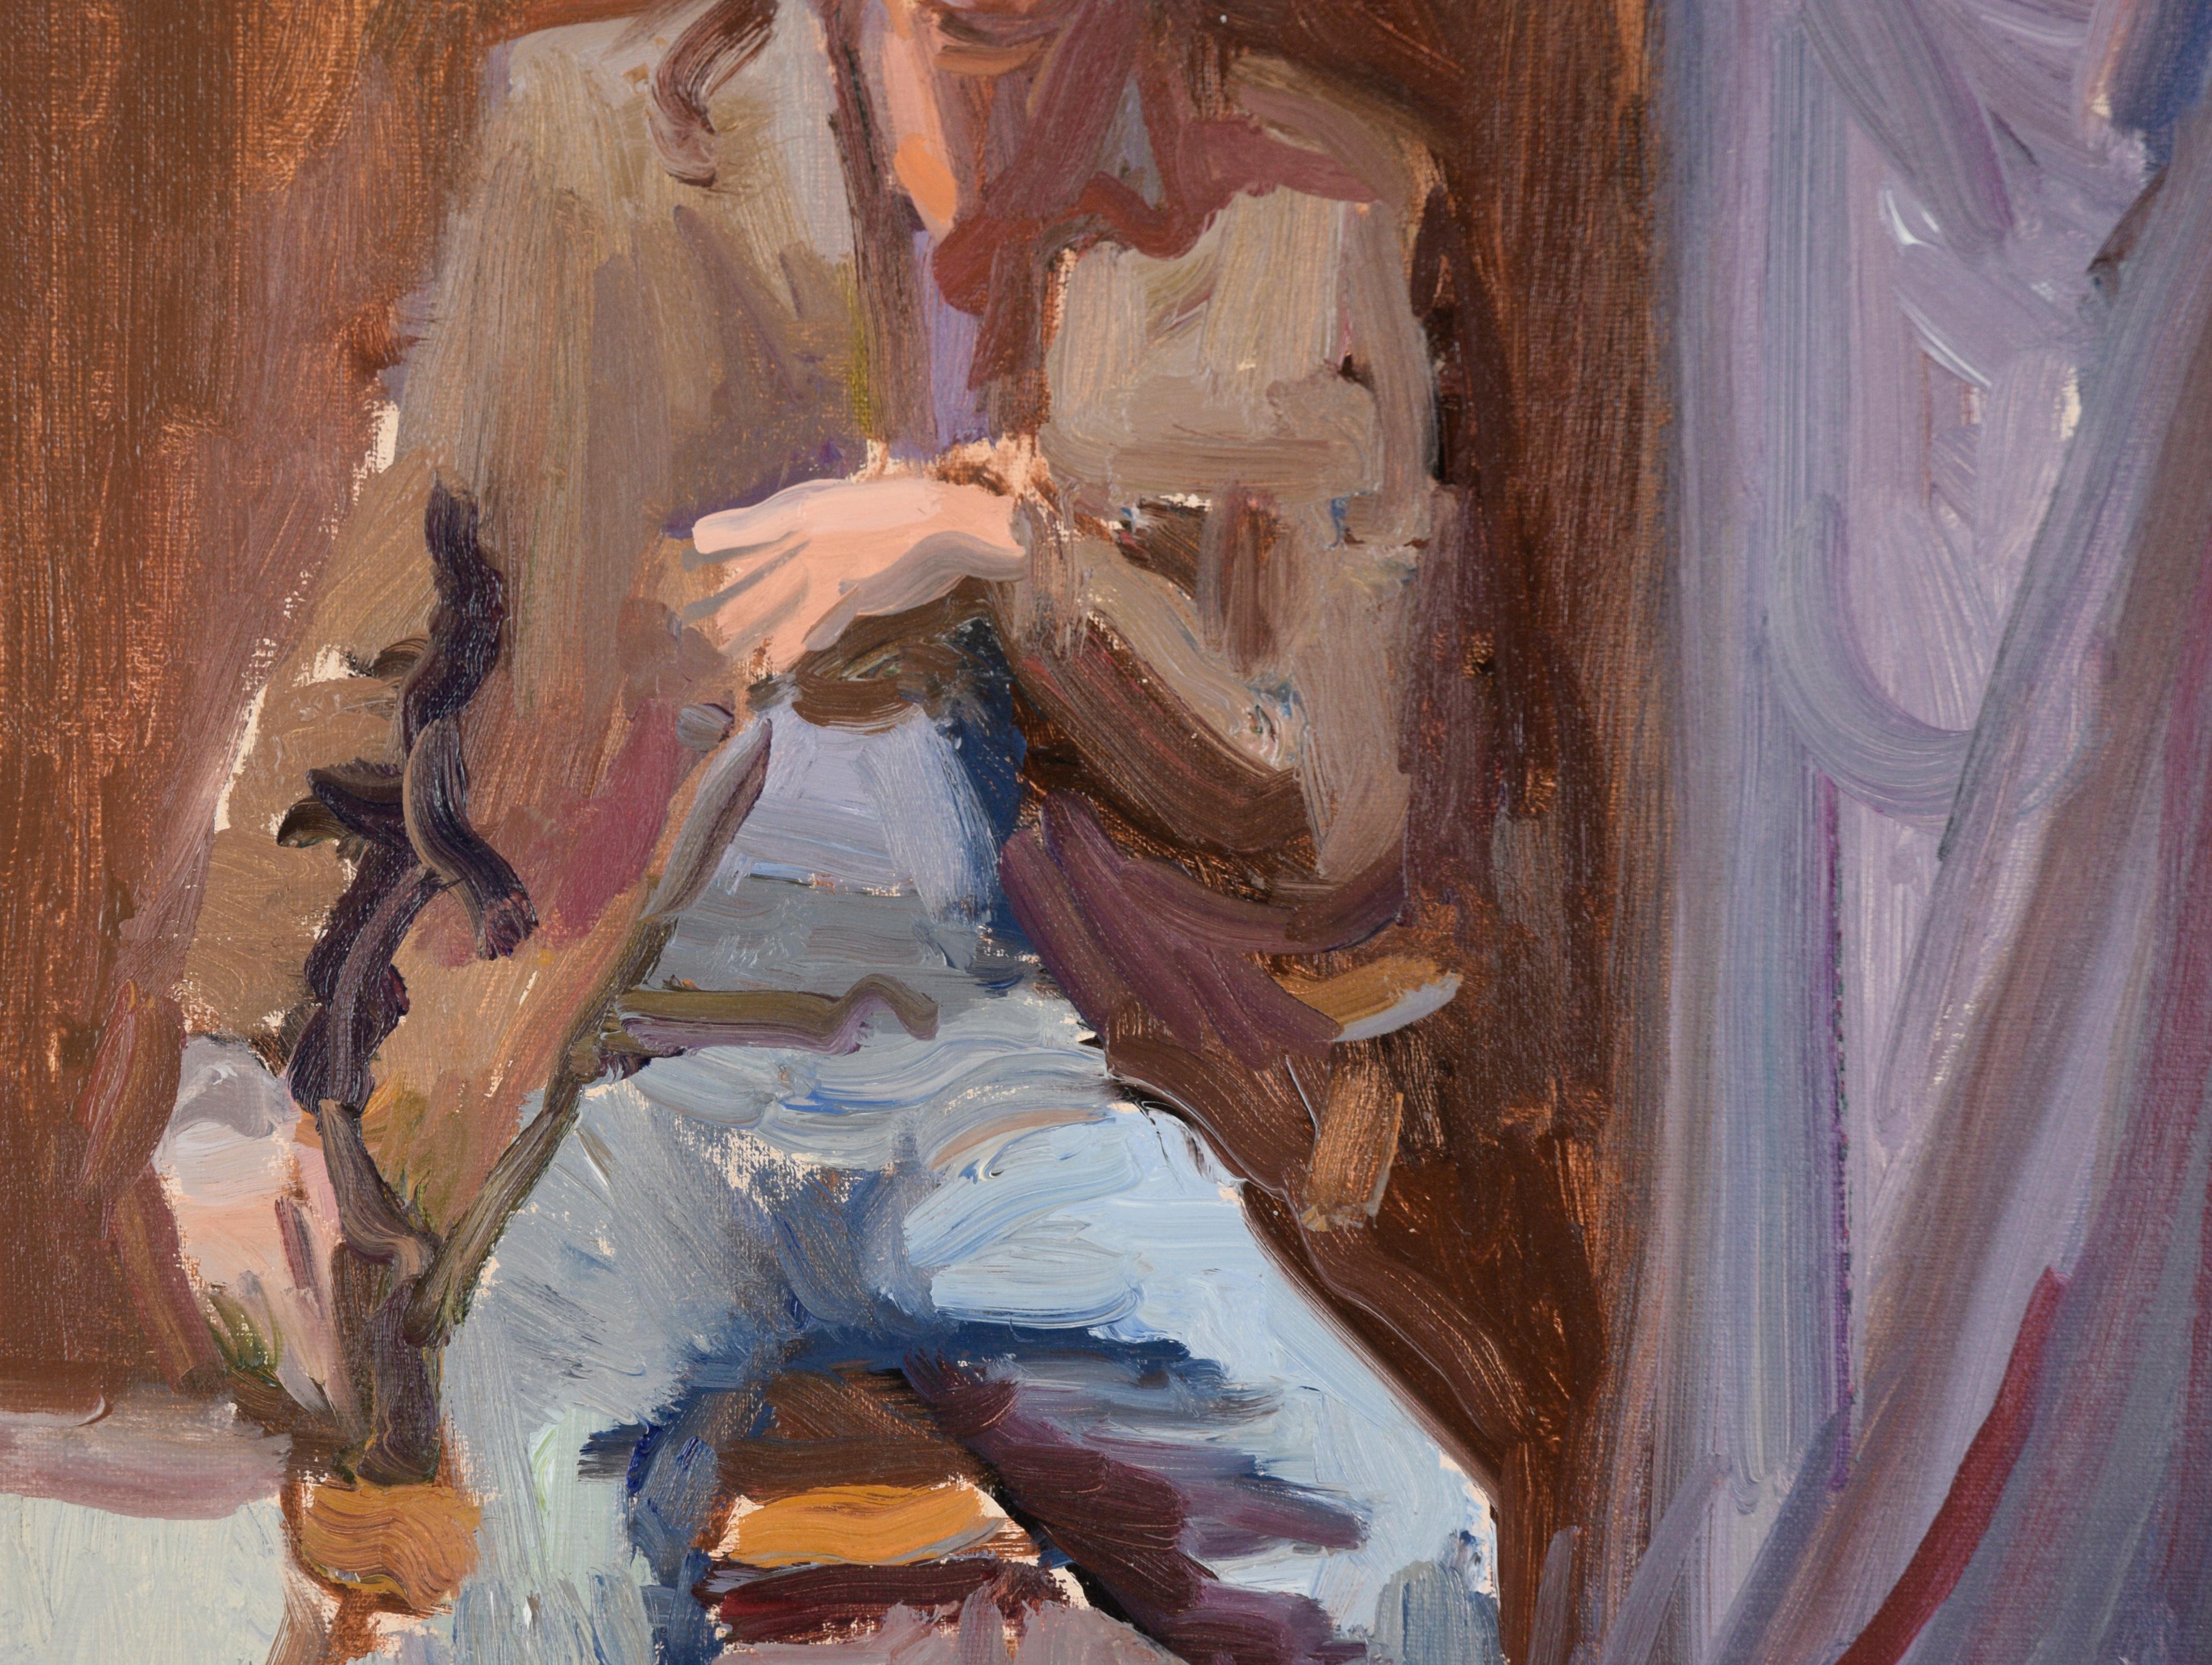 Porträt eines sitzenden Mannes in Jeans und einem Sportmantel in Öl auf Leinwand

Modernes impressionistisches Porträt eines unbekannten Künstlers (20. Jahrhundert). Ein Mann sitzt auf einem Holzstuhl, trägt Jeans, eine Sportjacke und eine blaue